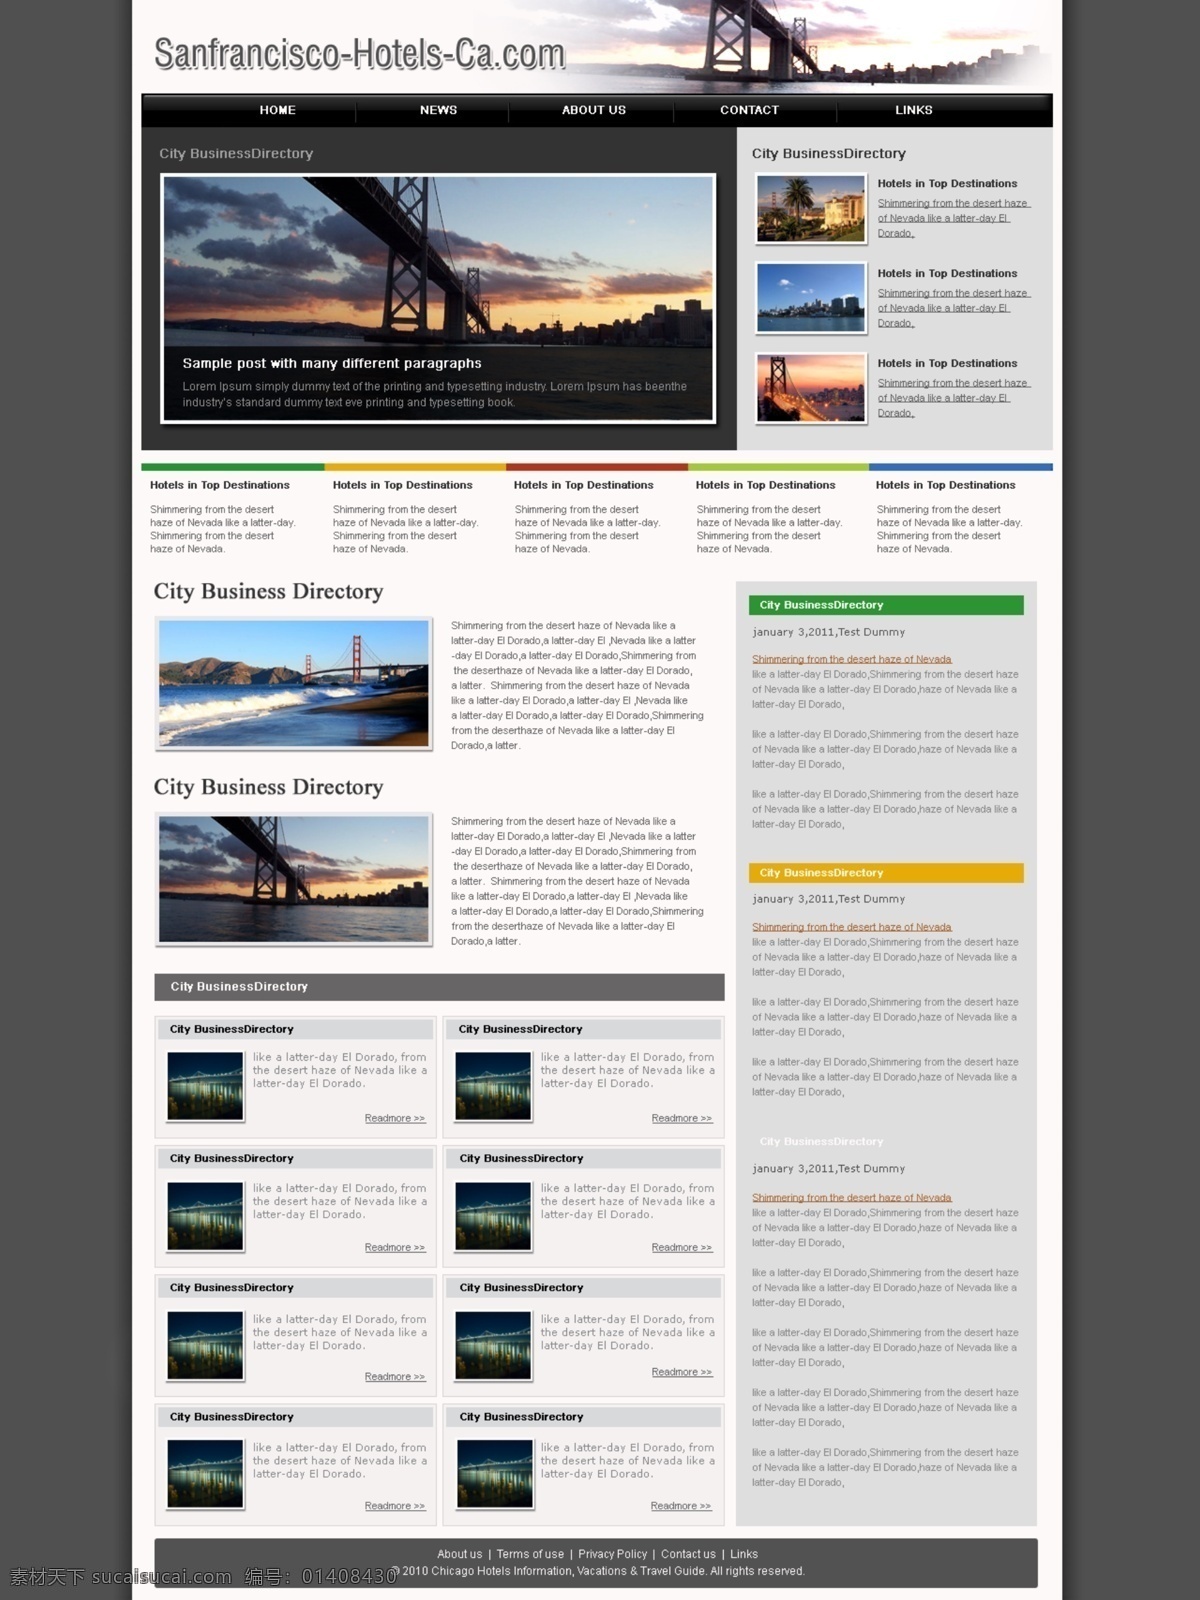 旅游 欧美模板 网页模板 源文件 旧金山 sanfrancisco 城市旅游模板 网页素材